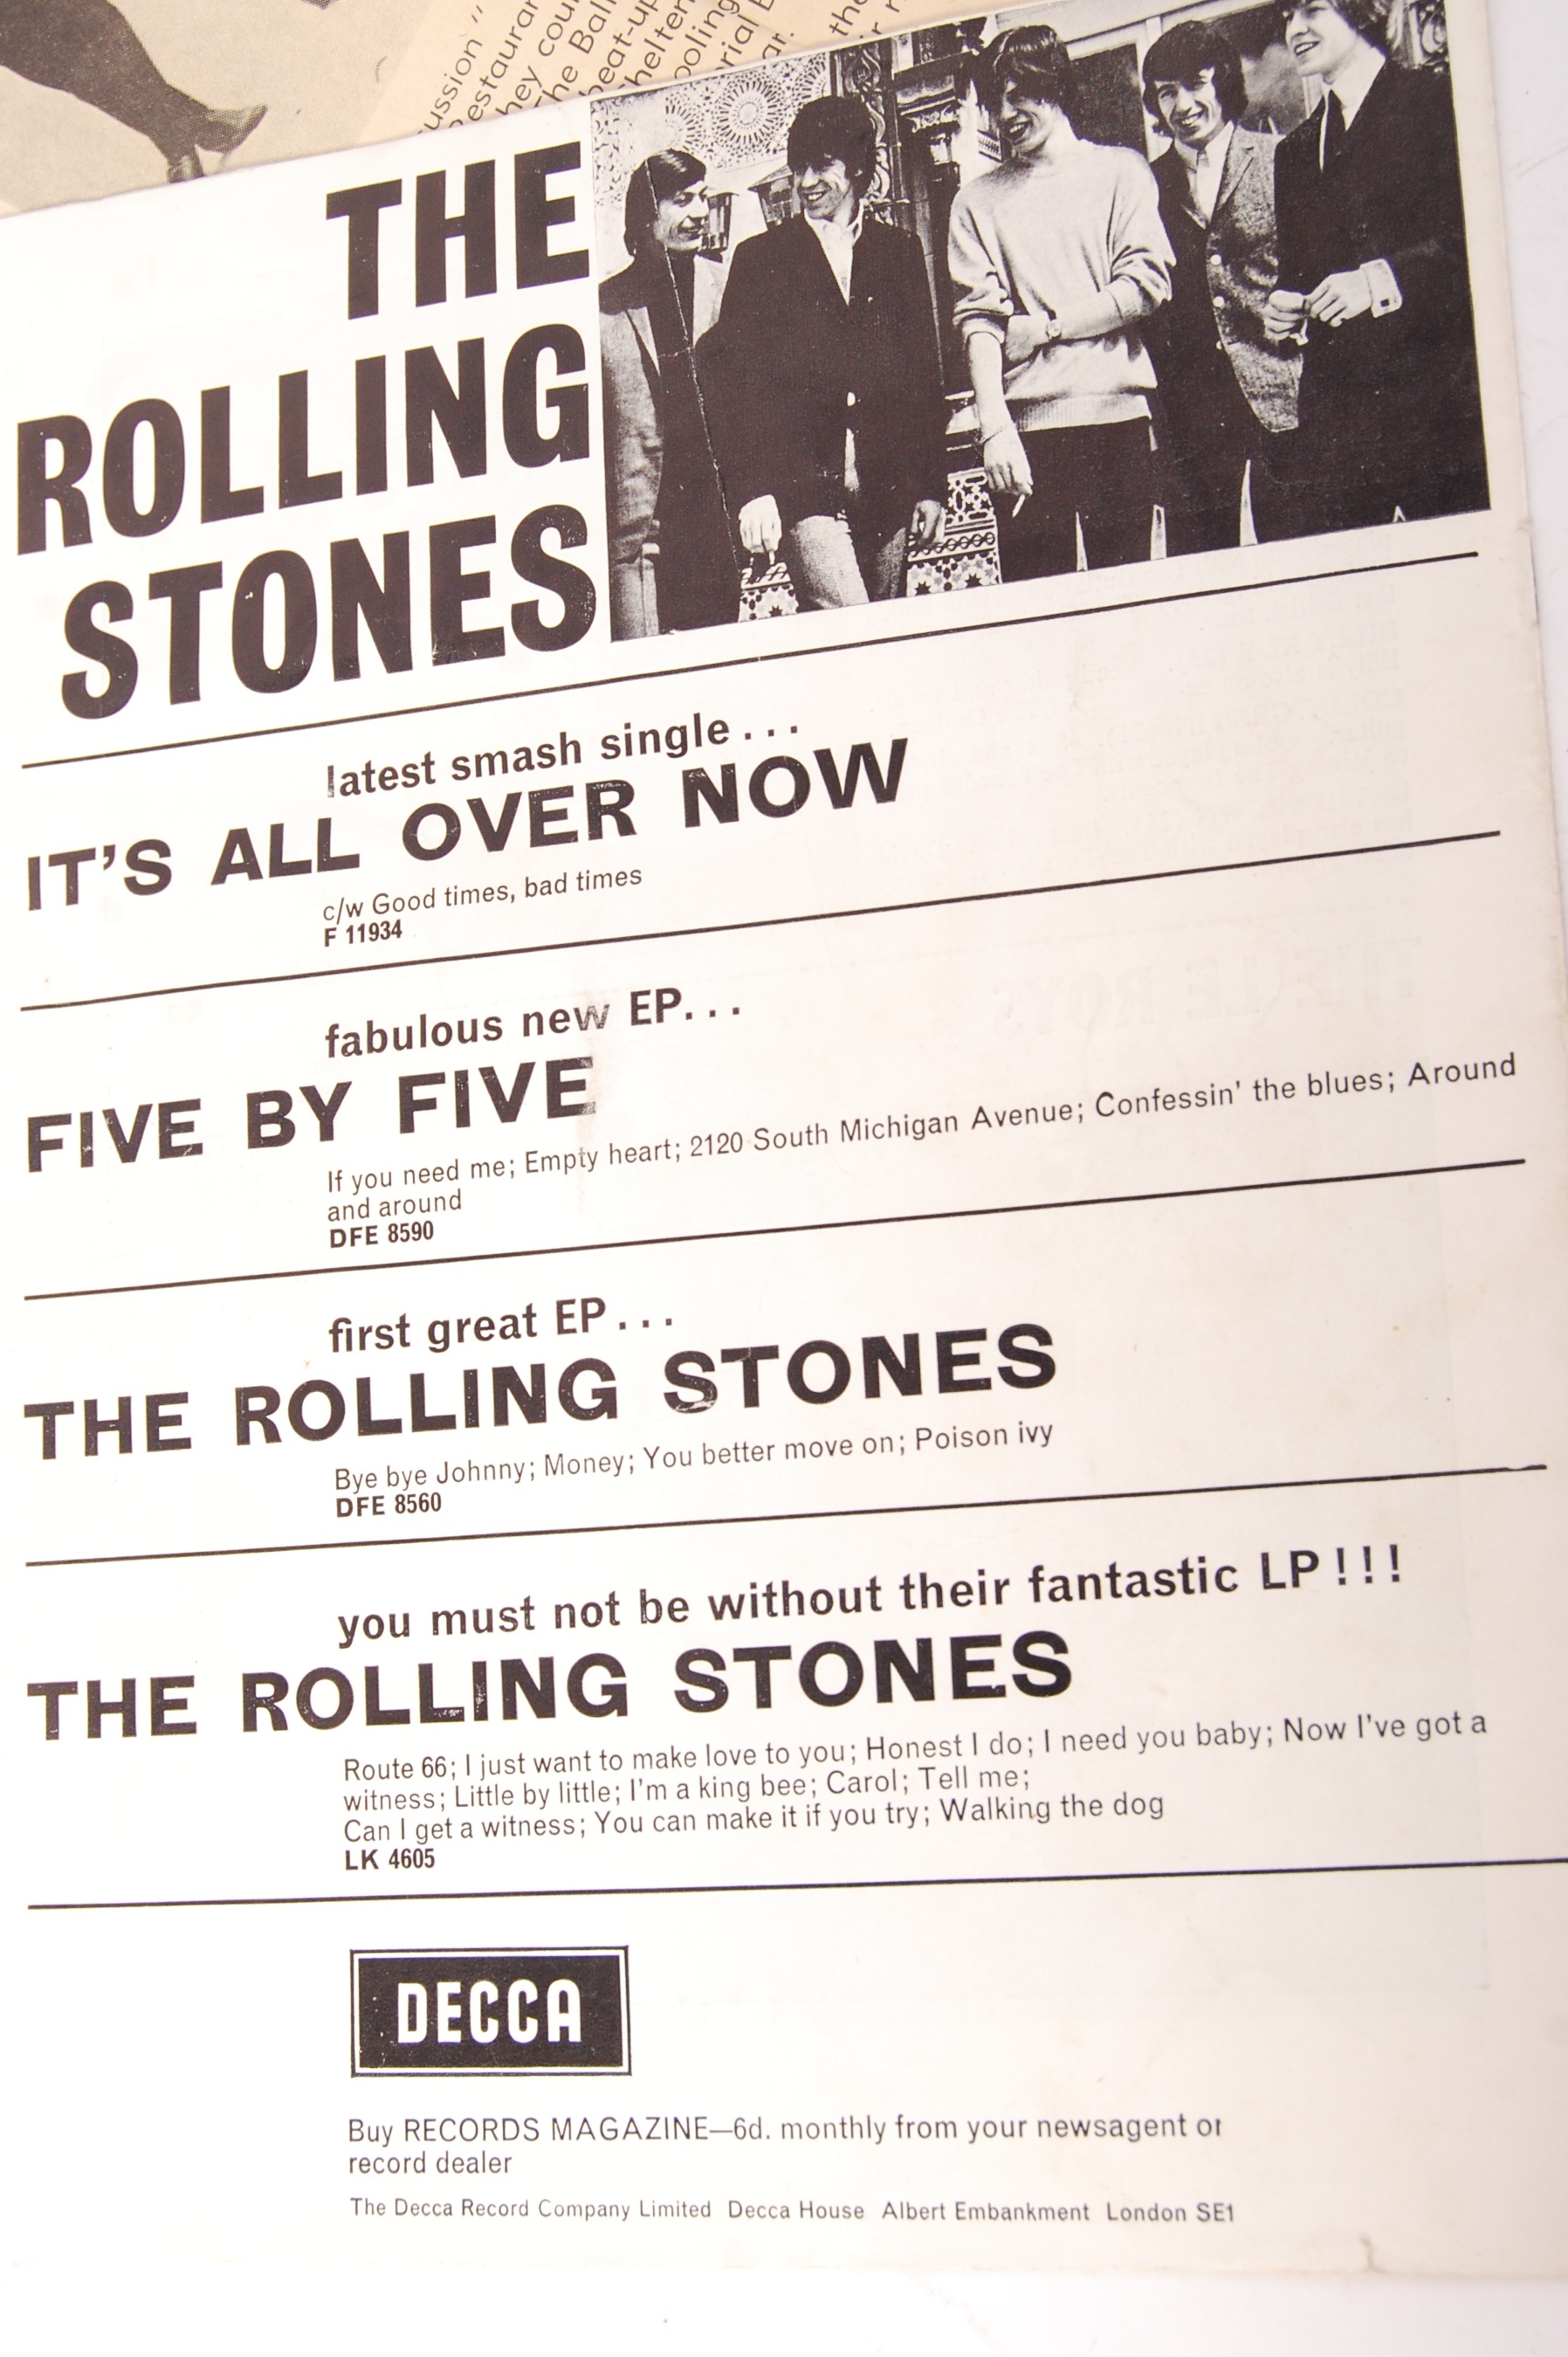 RARE ORIGINAL VINTAGE ROLLING STONES 1964 FIRST UK TOUR EPHEMERA - Image 5 of 7